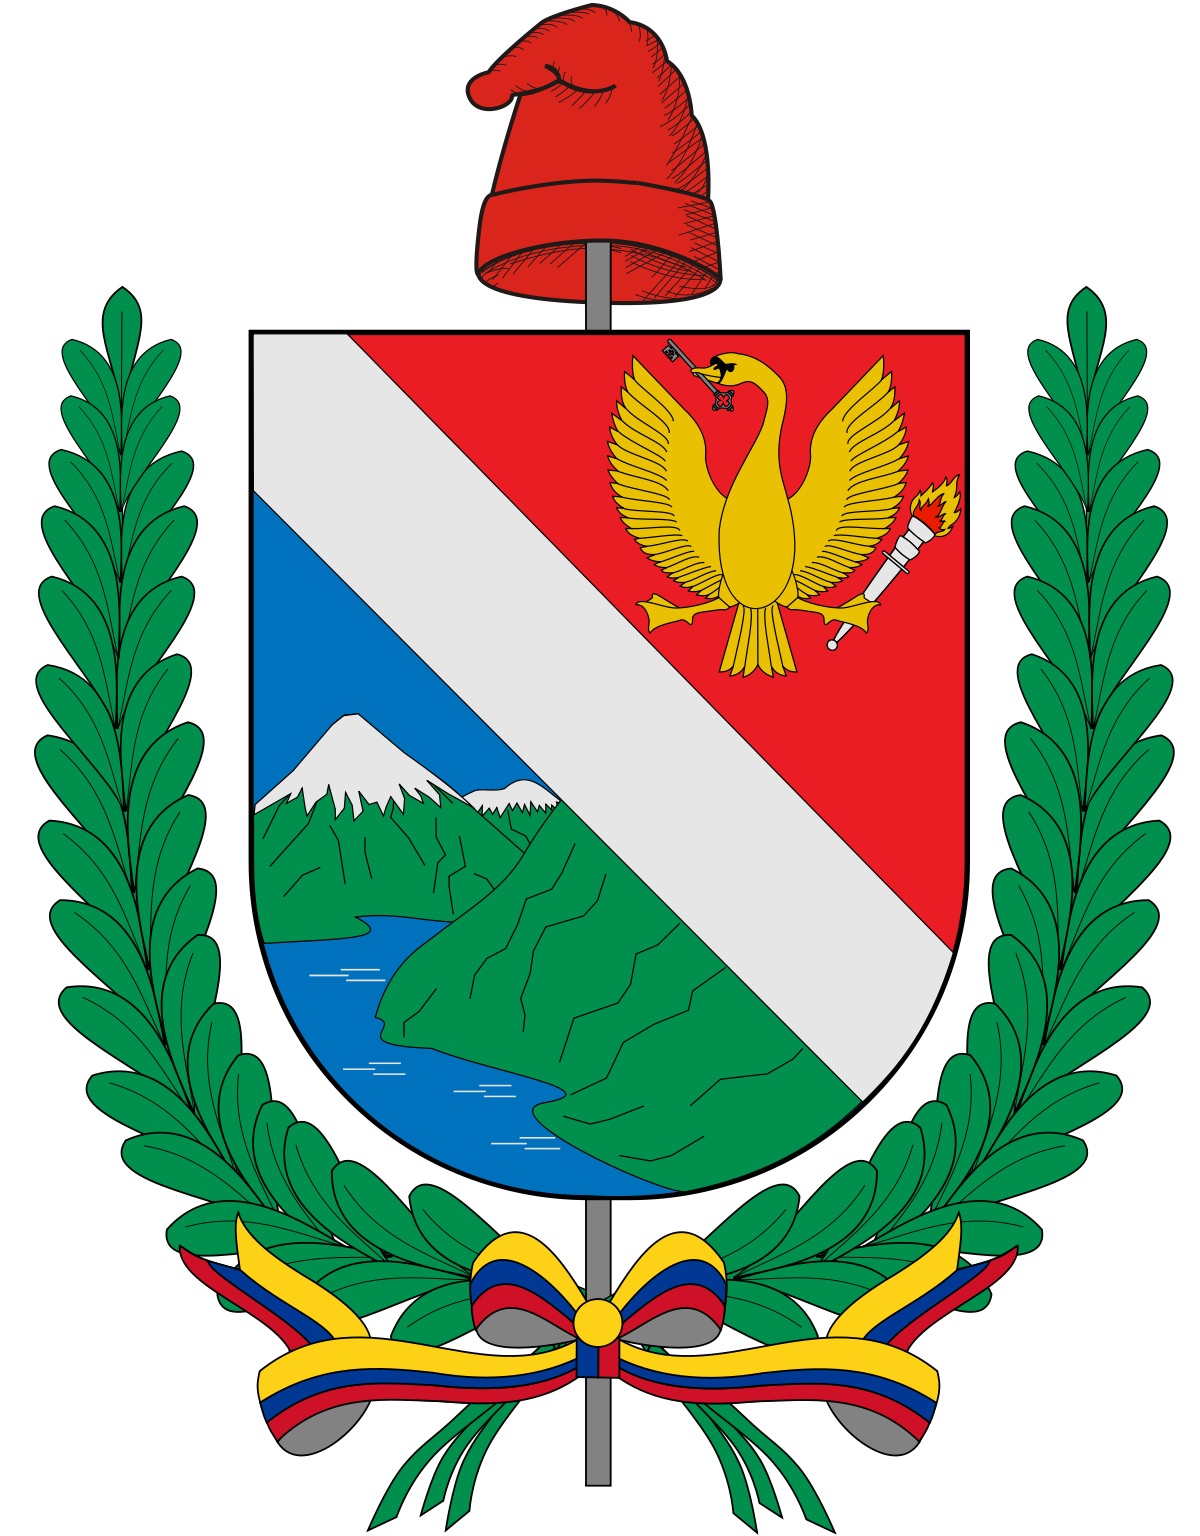 Gobernación del Tolima